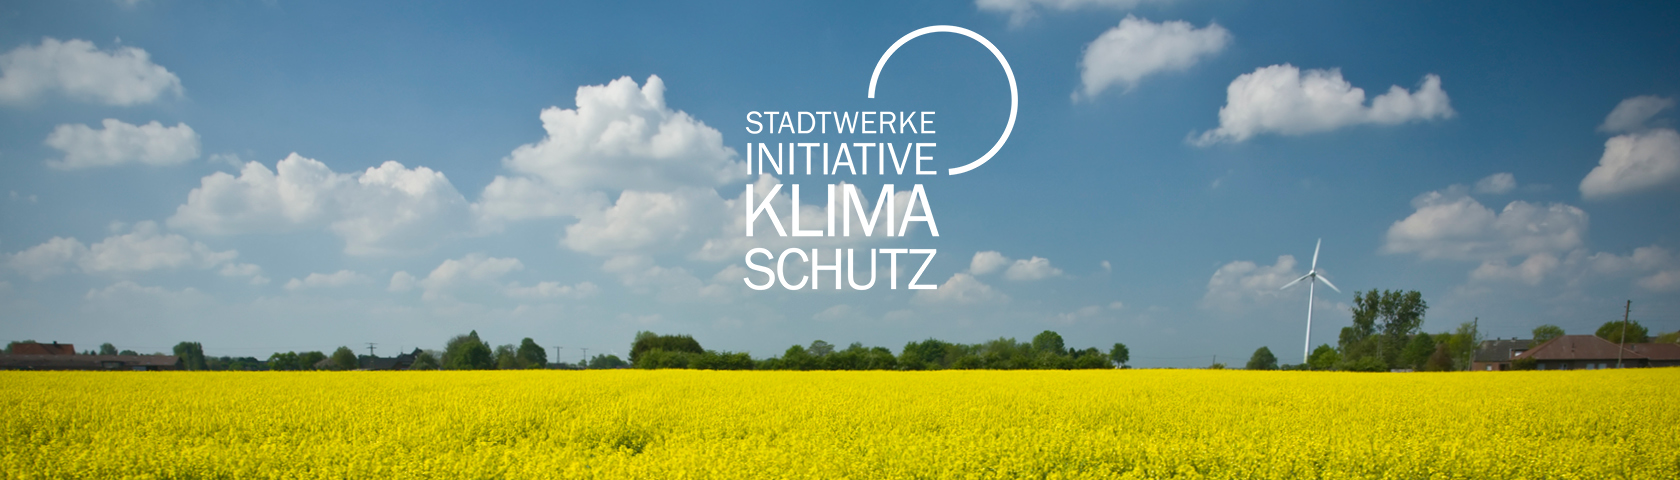 Initiative Klimaschutz - Stadtwerke Willich